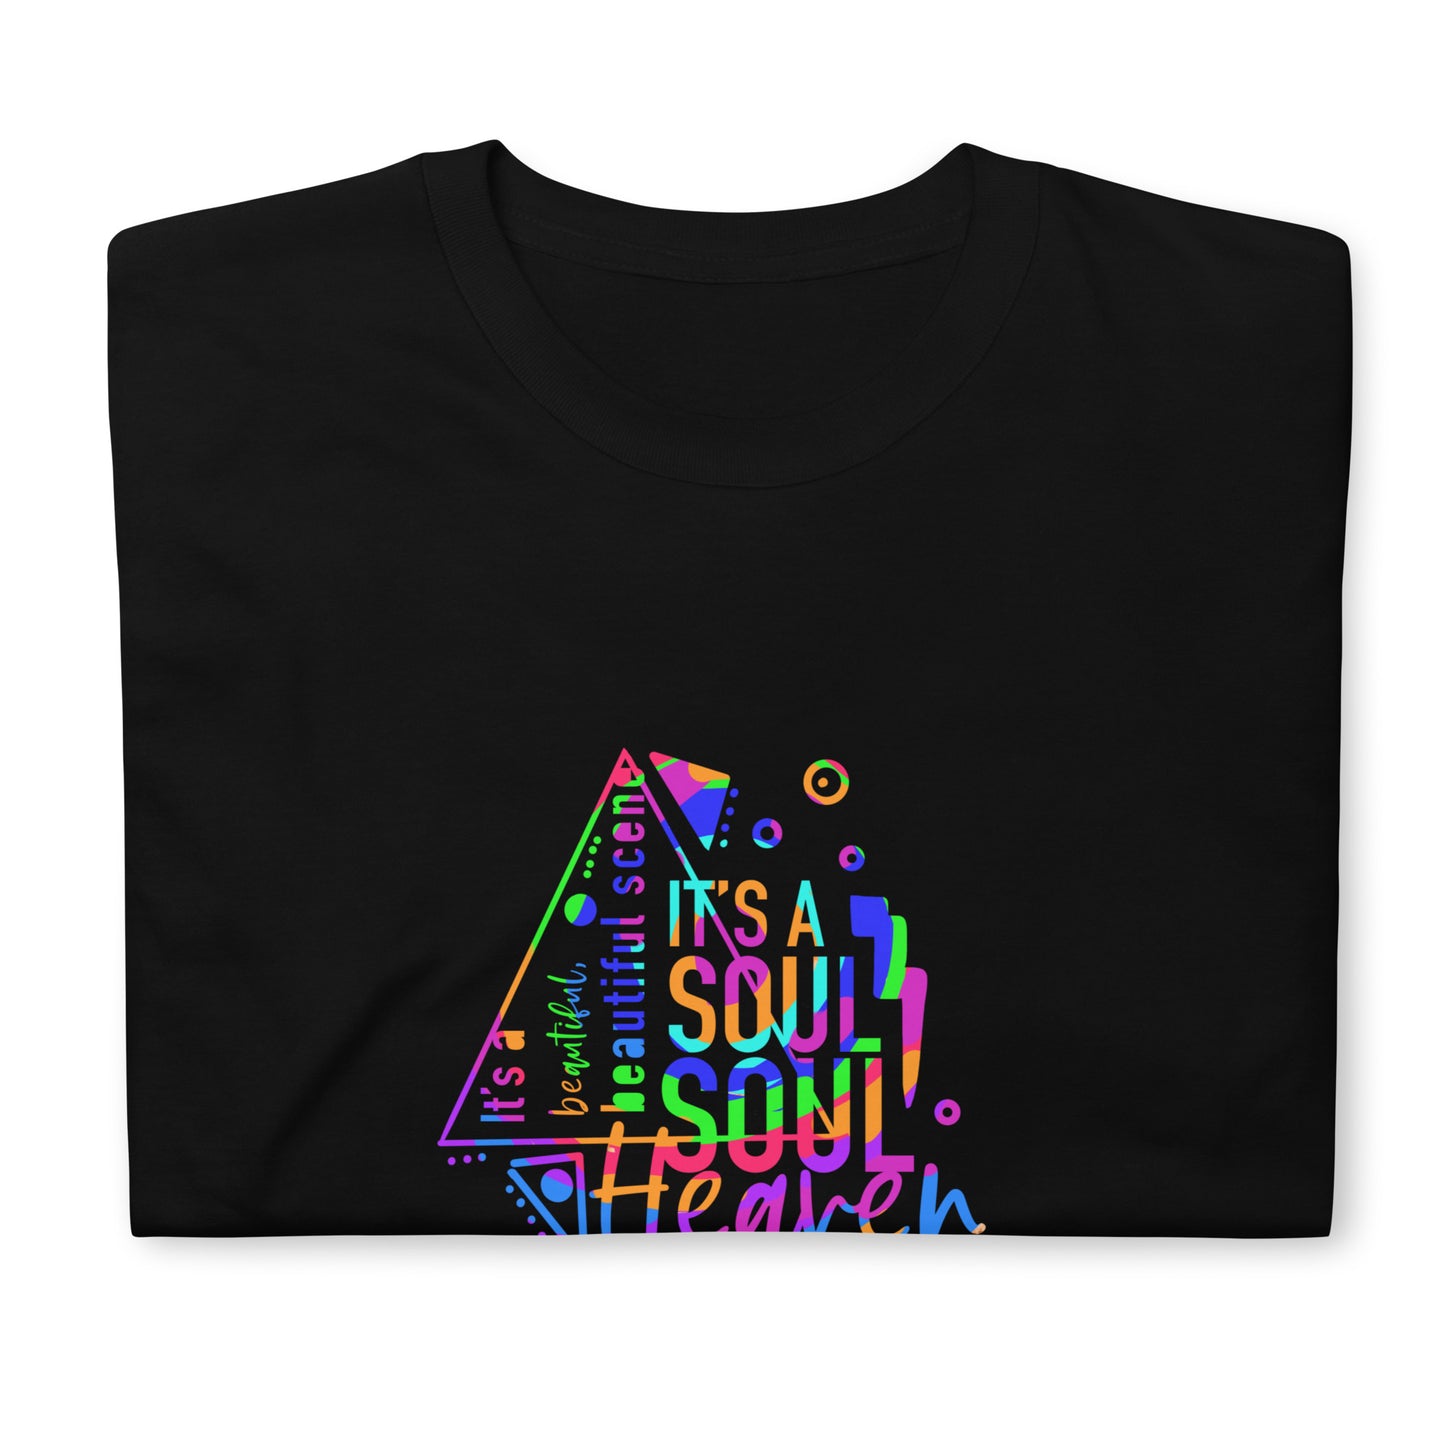 Soul Heaven Short-Sleeve Unisex T-Shirt colour